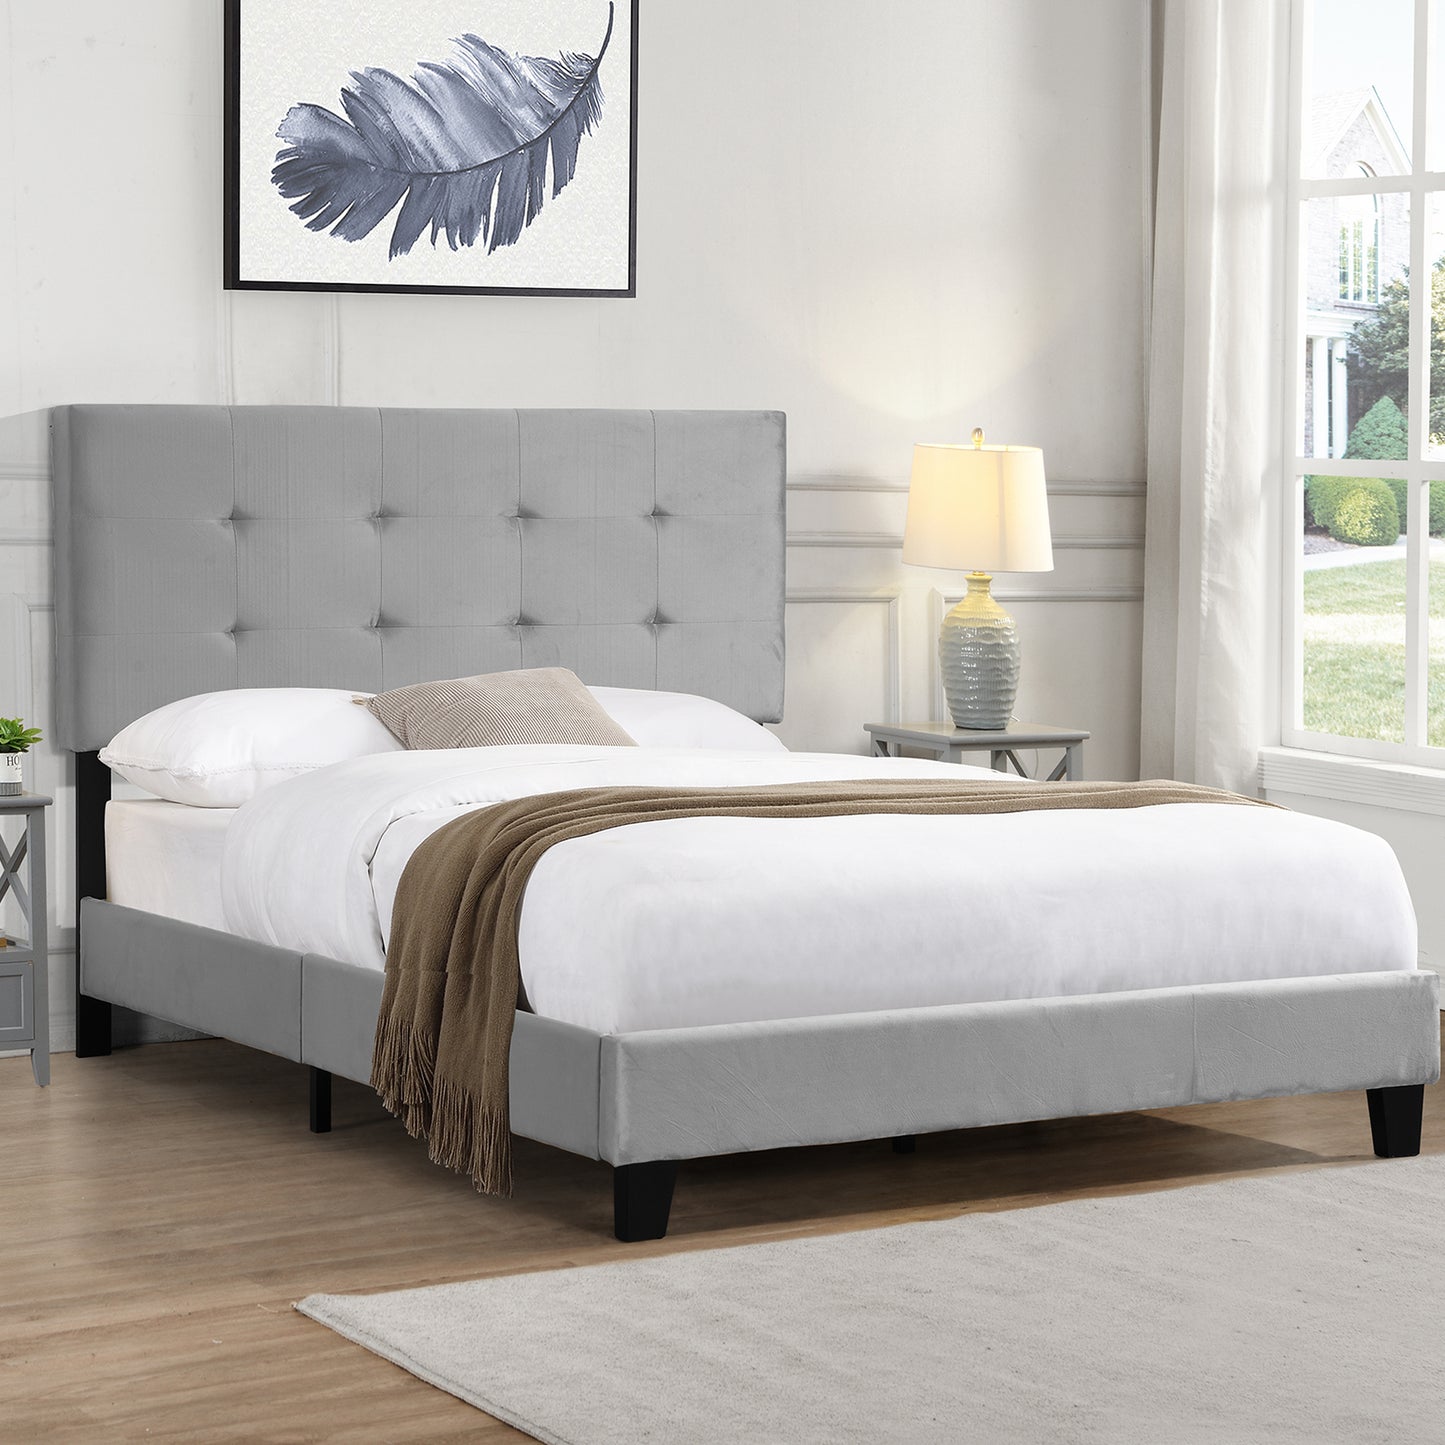 SYNGAR Full Bed Frame, New Upgrade Full Size Velvet Upholstered Platform Bed Frame with Elegant Headboard, Bedroom Furniture Wooden Frame Platform Bed Frame, No Box Spring Needed, Gray